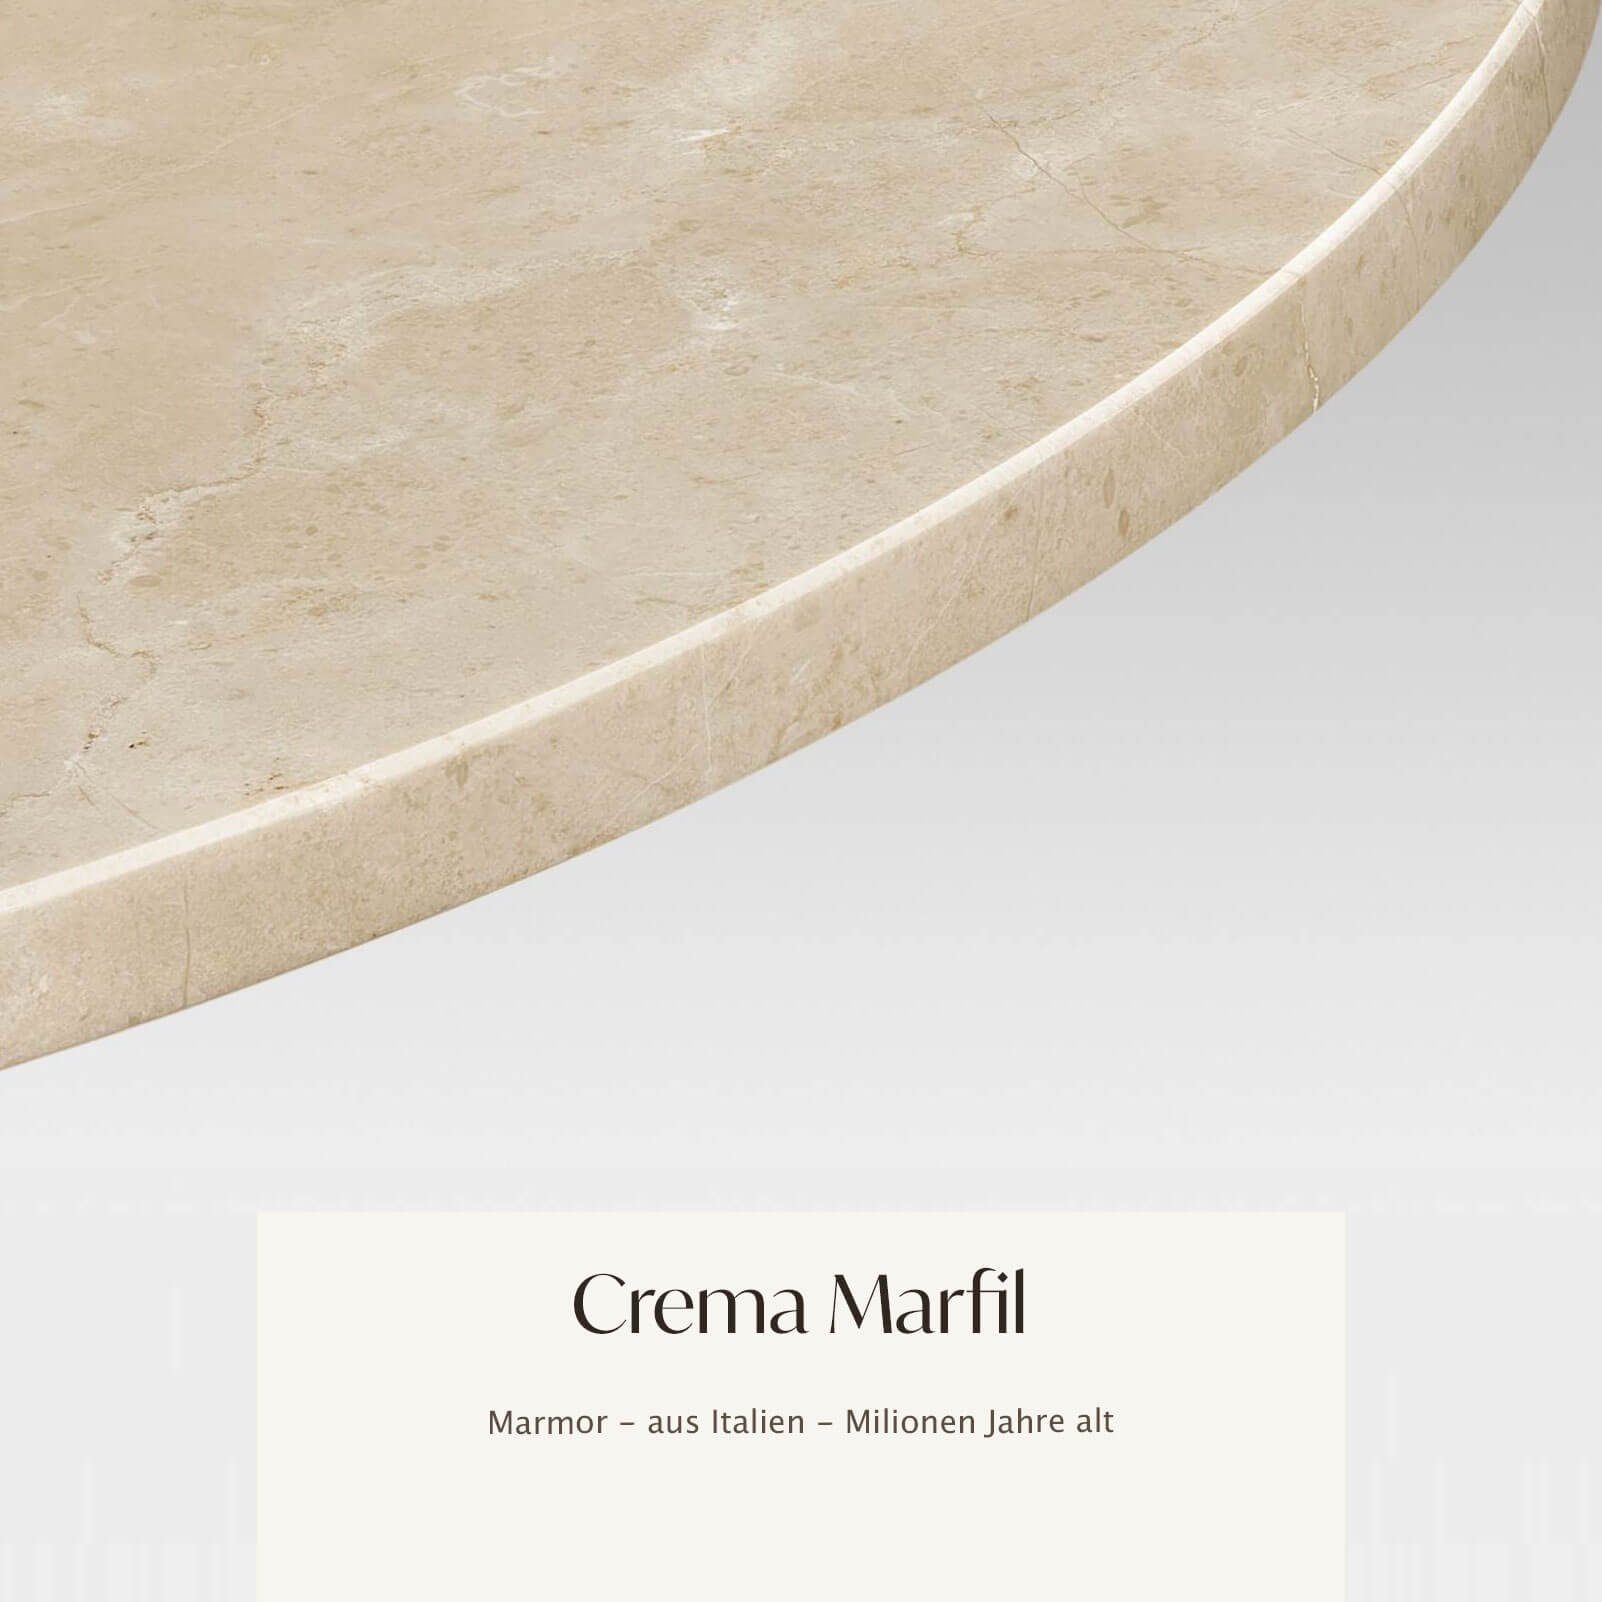 MAGNA Atelier Esstisch BERGEN OVAL mit Marmor Tischplatte, ovaler Marmor Esstisch, Metallgestell, 200x100x75cm